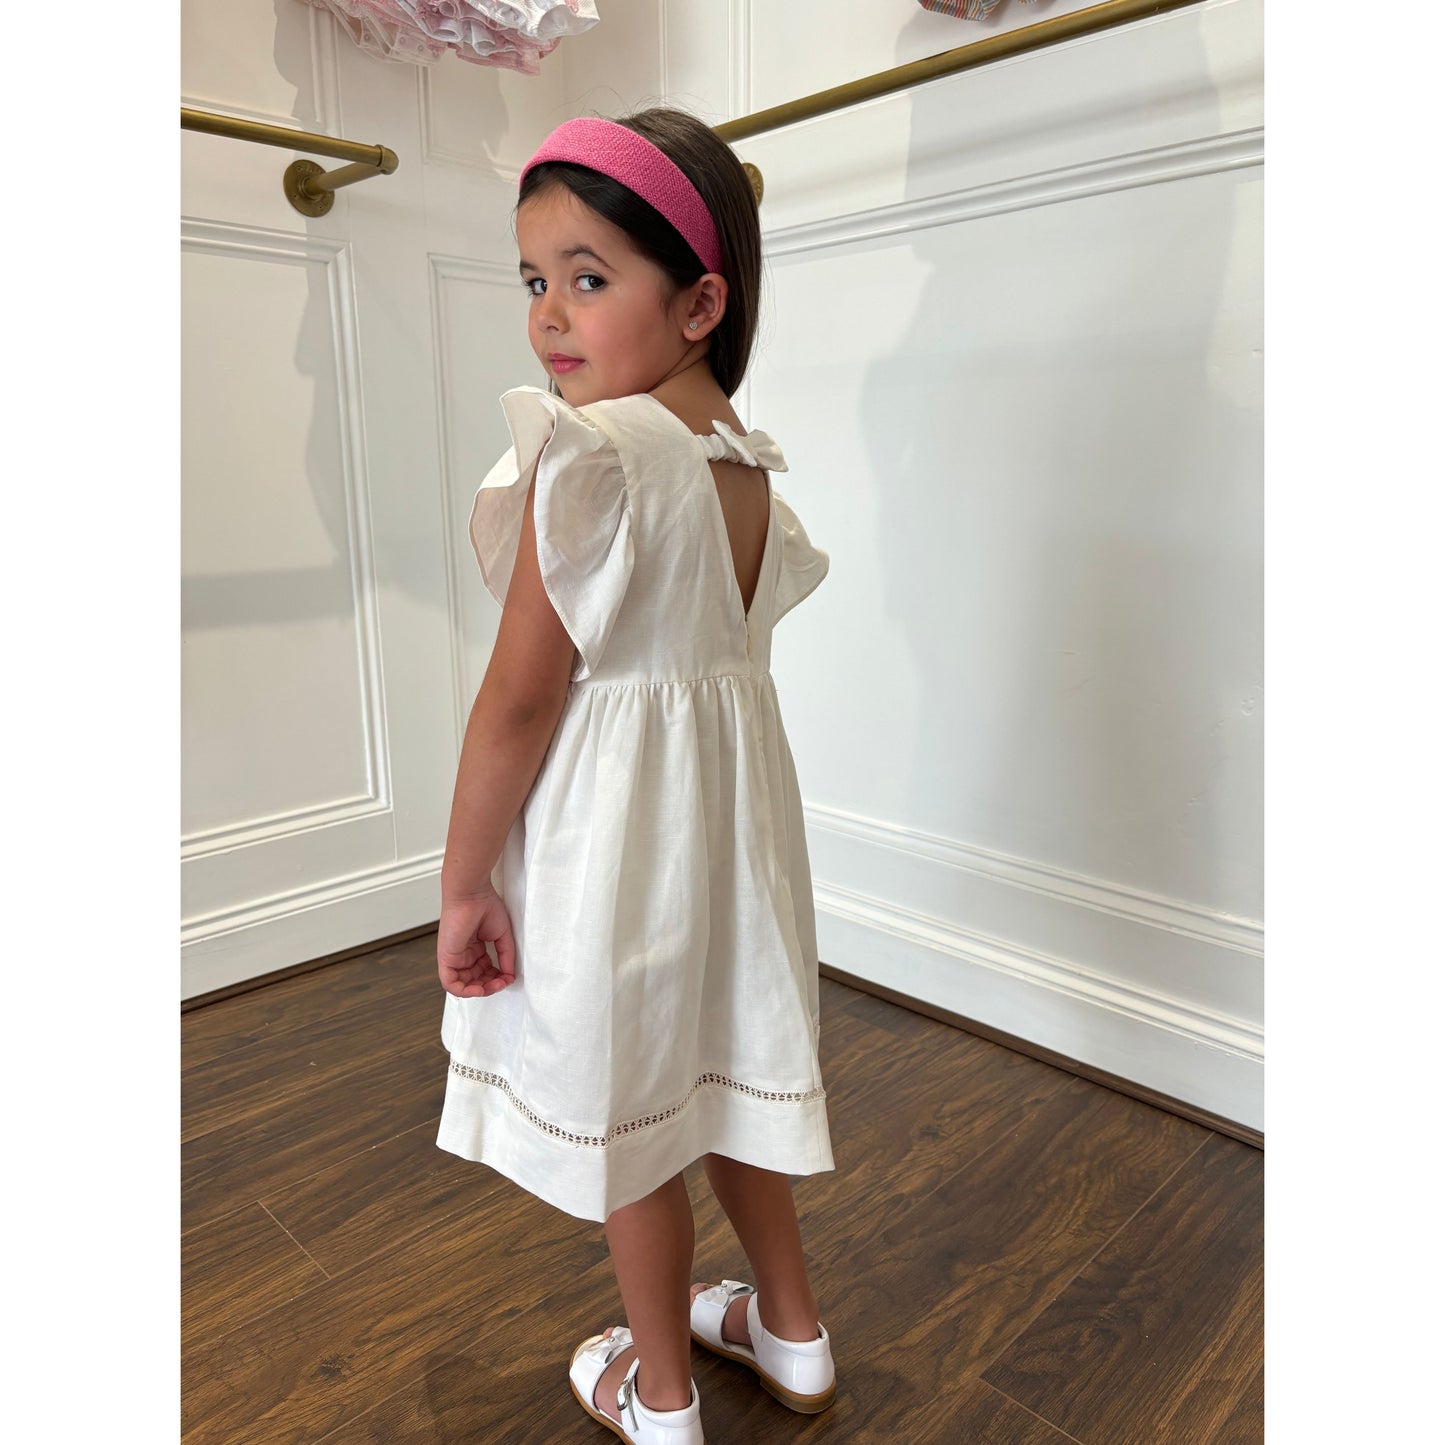 Cream Summer dress for girls by children’s designer brand Dr Kid - Adora Childrenswear